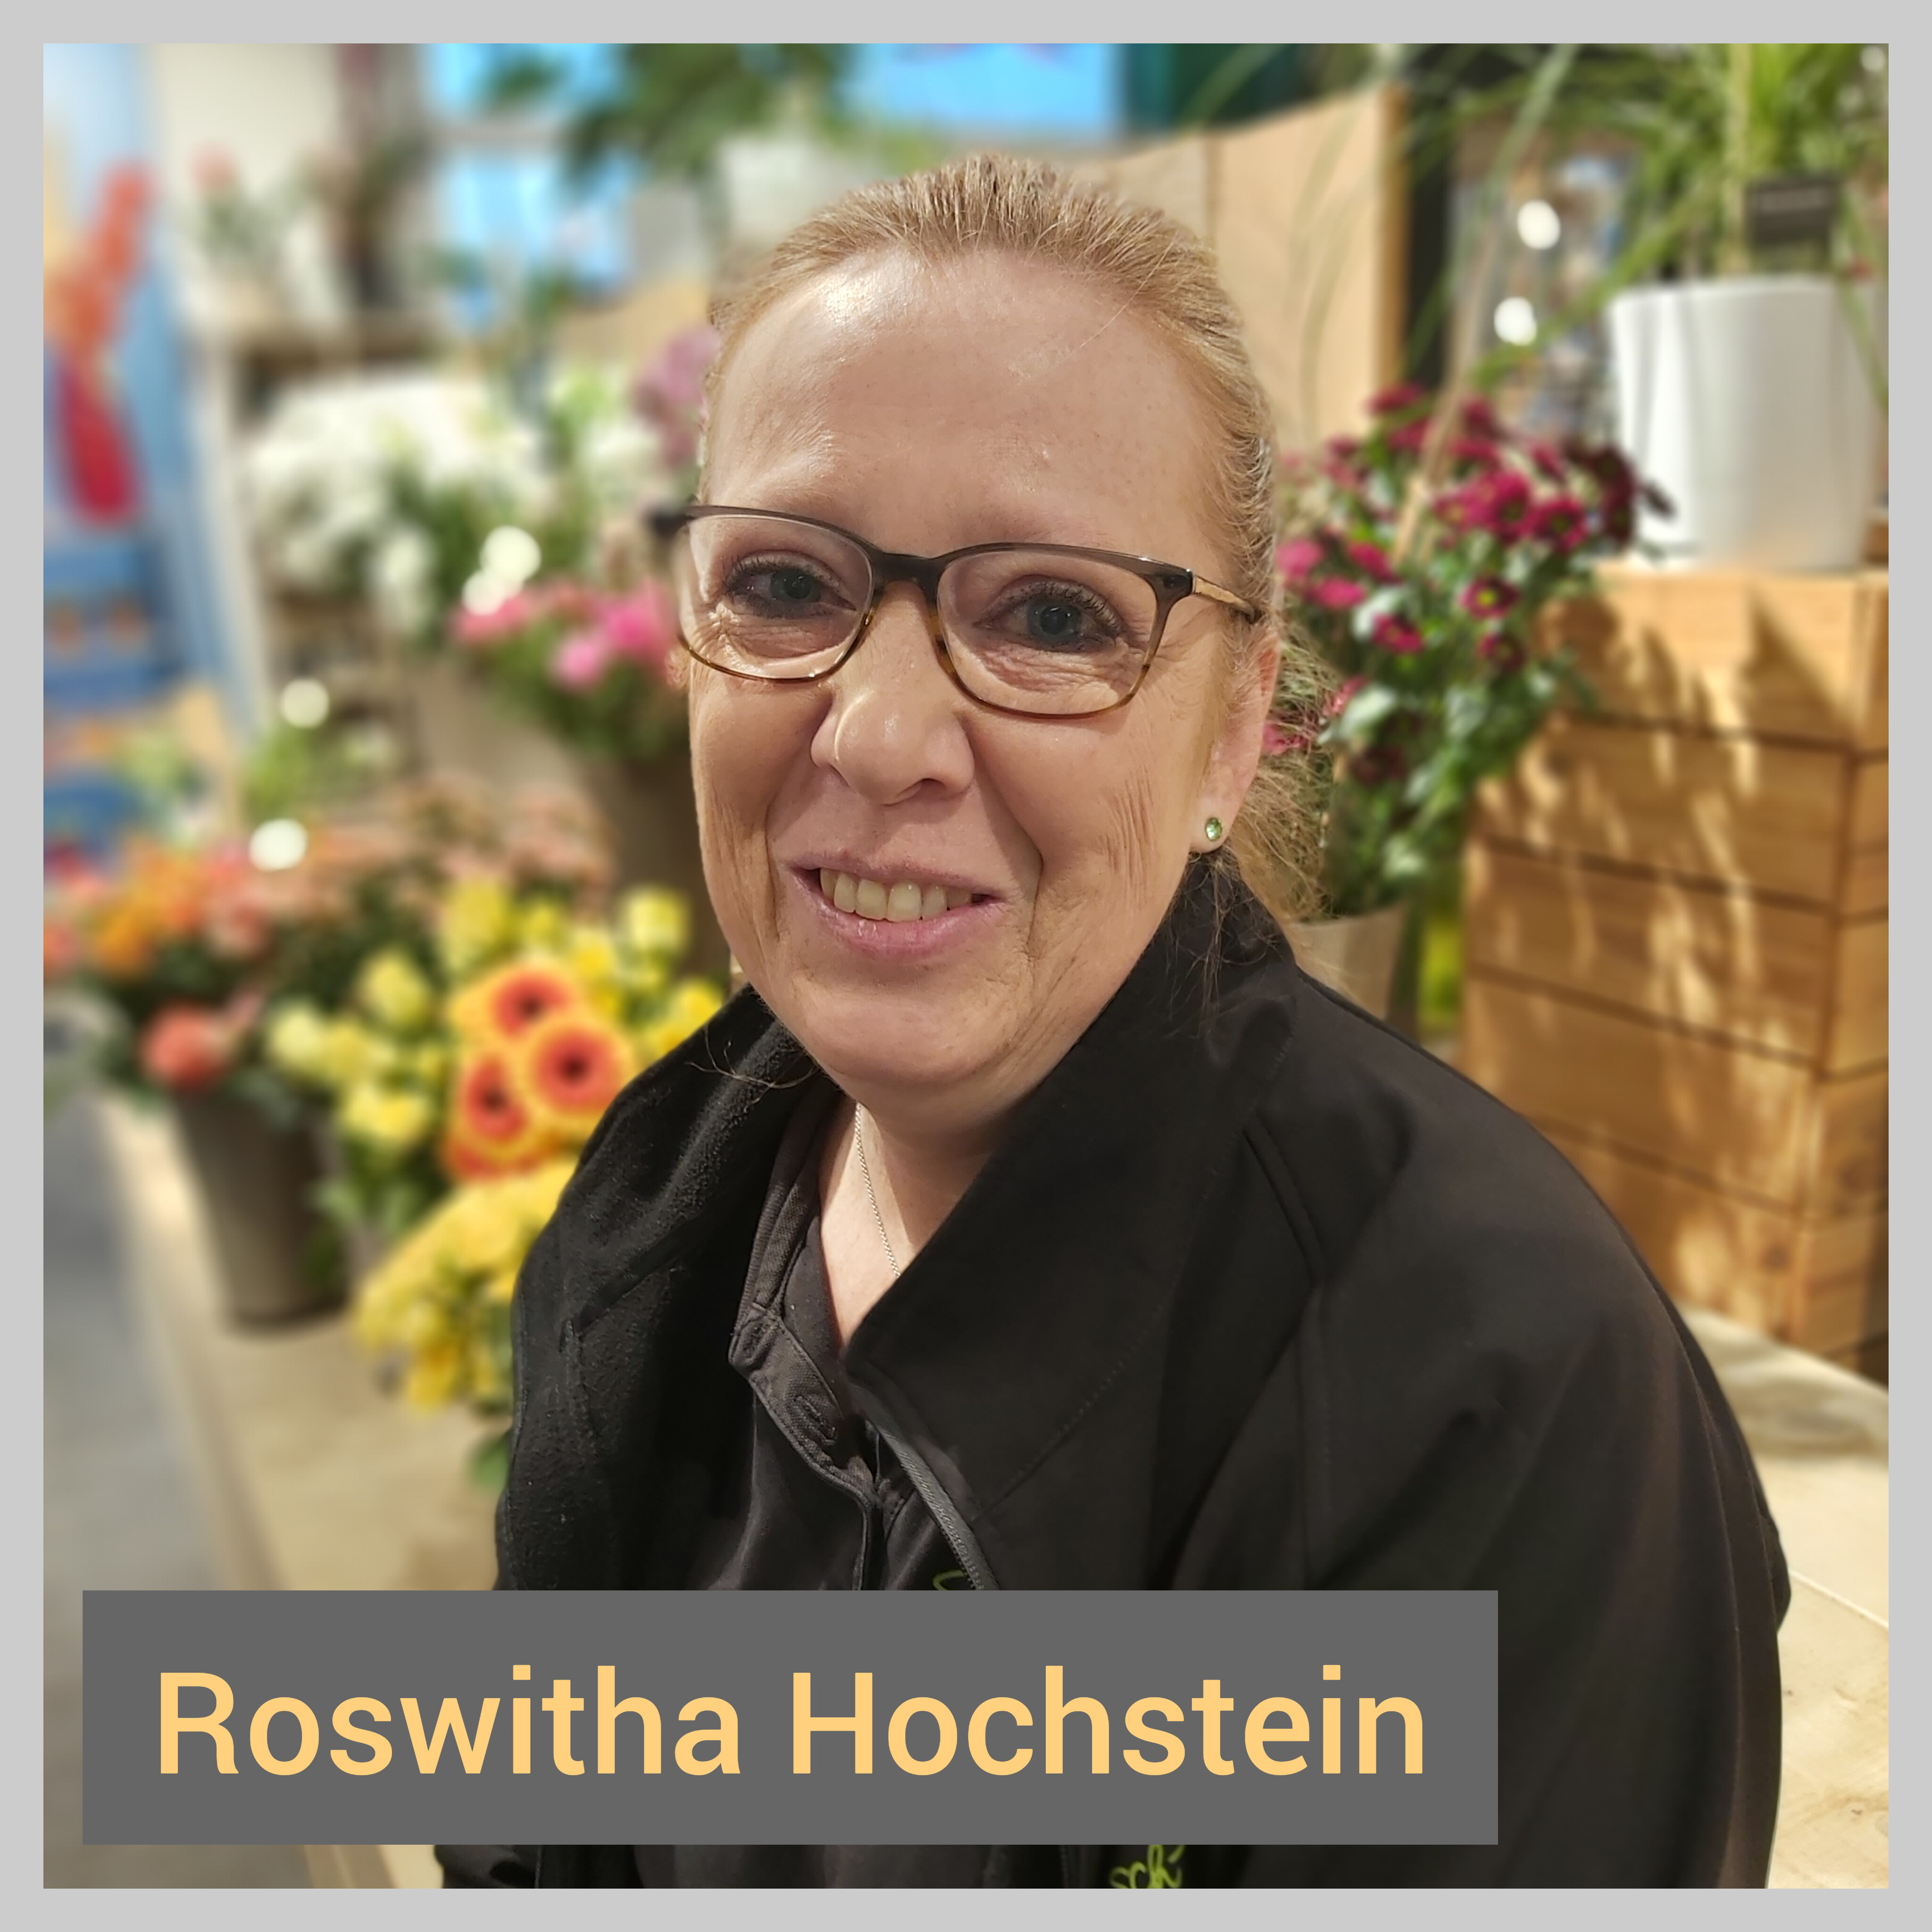 Roswitha Hochstein